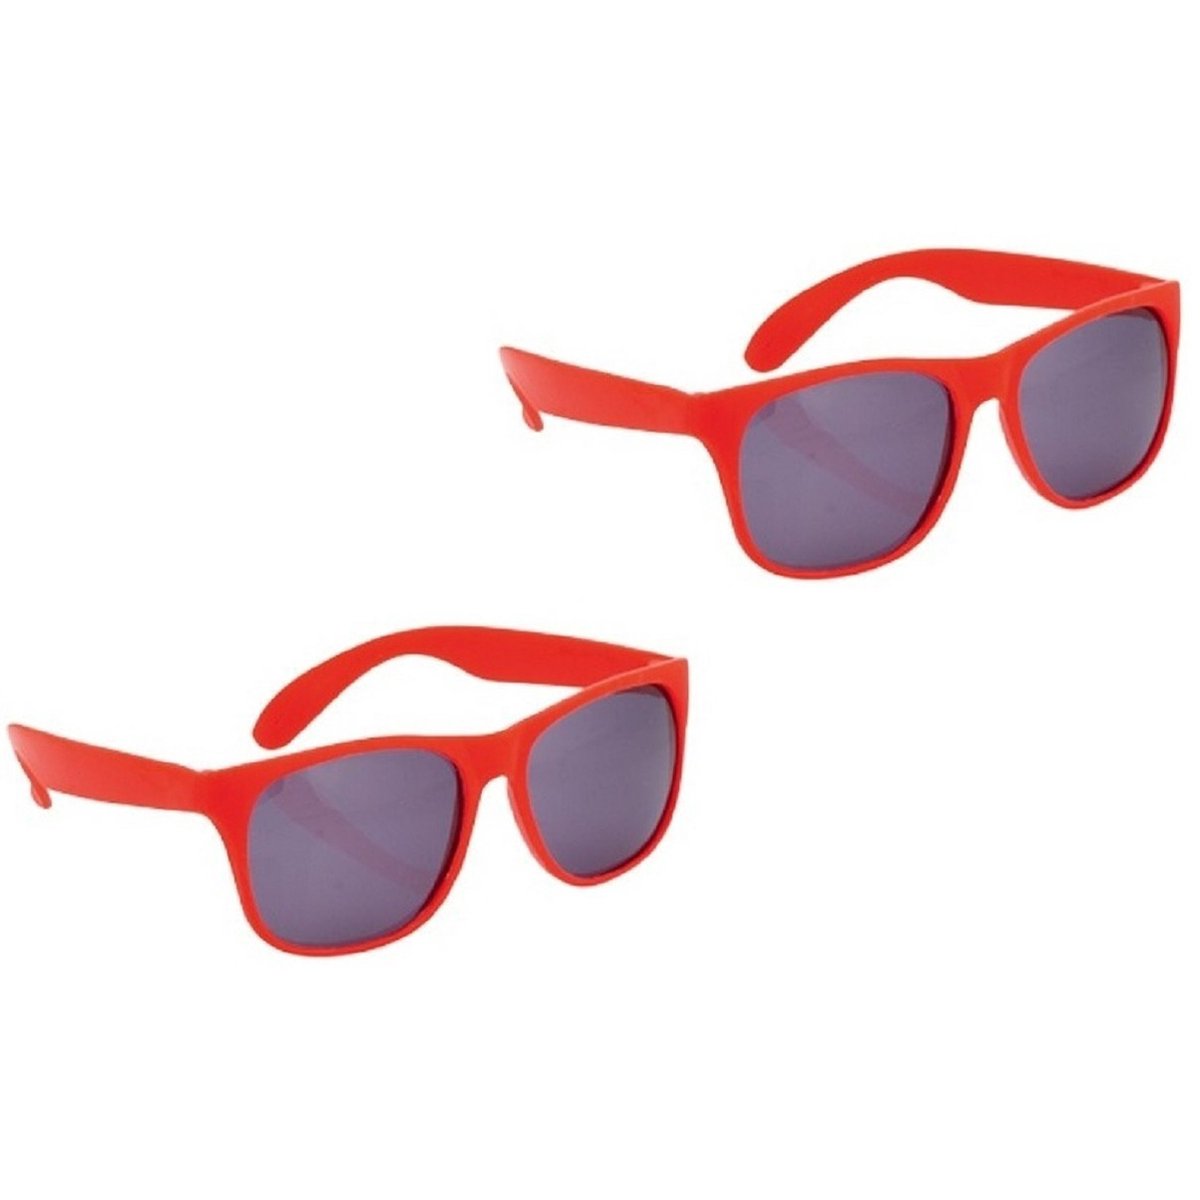 Set van 10x stuks voordelige rode verkleed zonnebrillen voor volwassenen